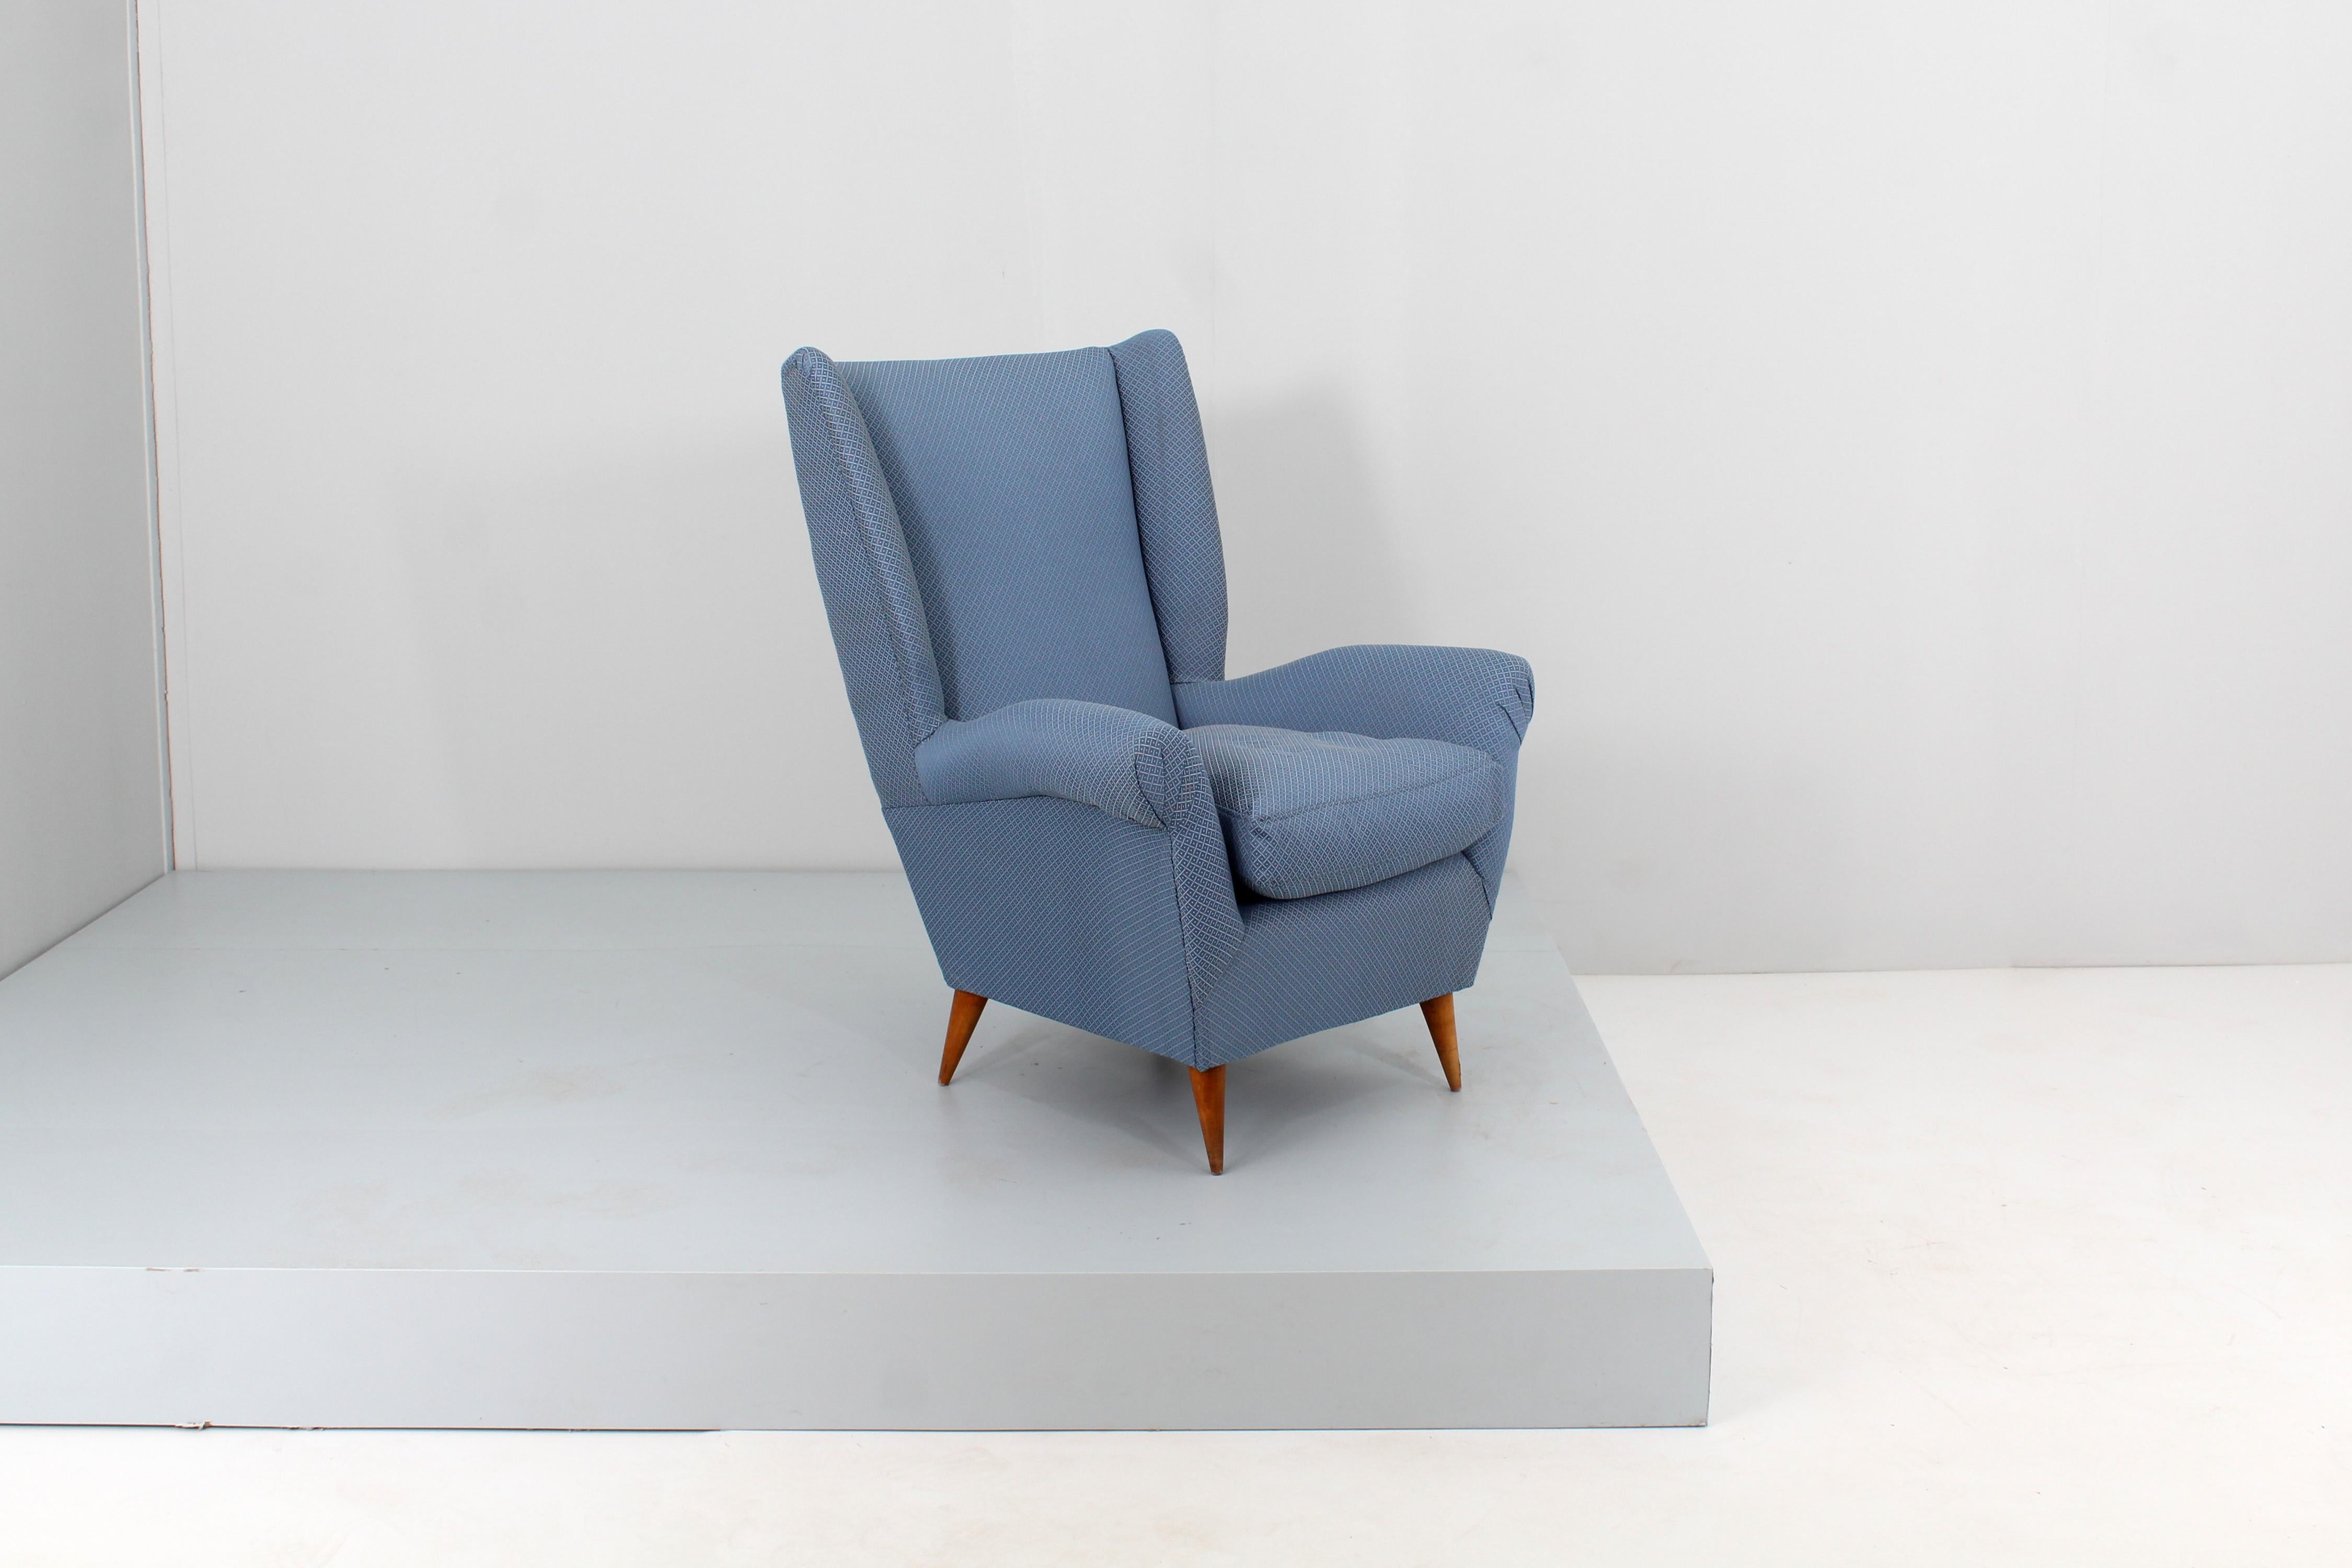 Sehr stilvoller Sessel mit Holzgestell, gepolstert mit blauem Stoff mit weißem Gittermuster und konischen Holzfüßen. Italienische Produktion von ISA Bergamo aus den 1950er Jahren, die Giò Ponti zuzuschreiben ist.
Alters- und gebrauchsbedingte